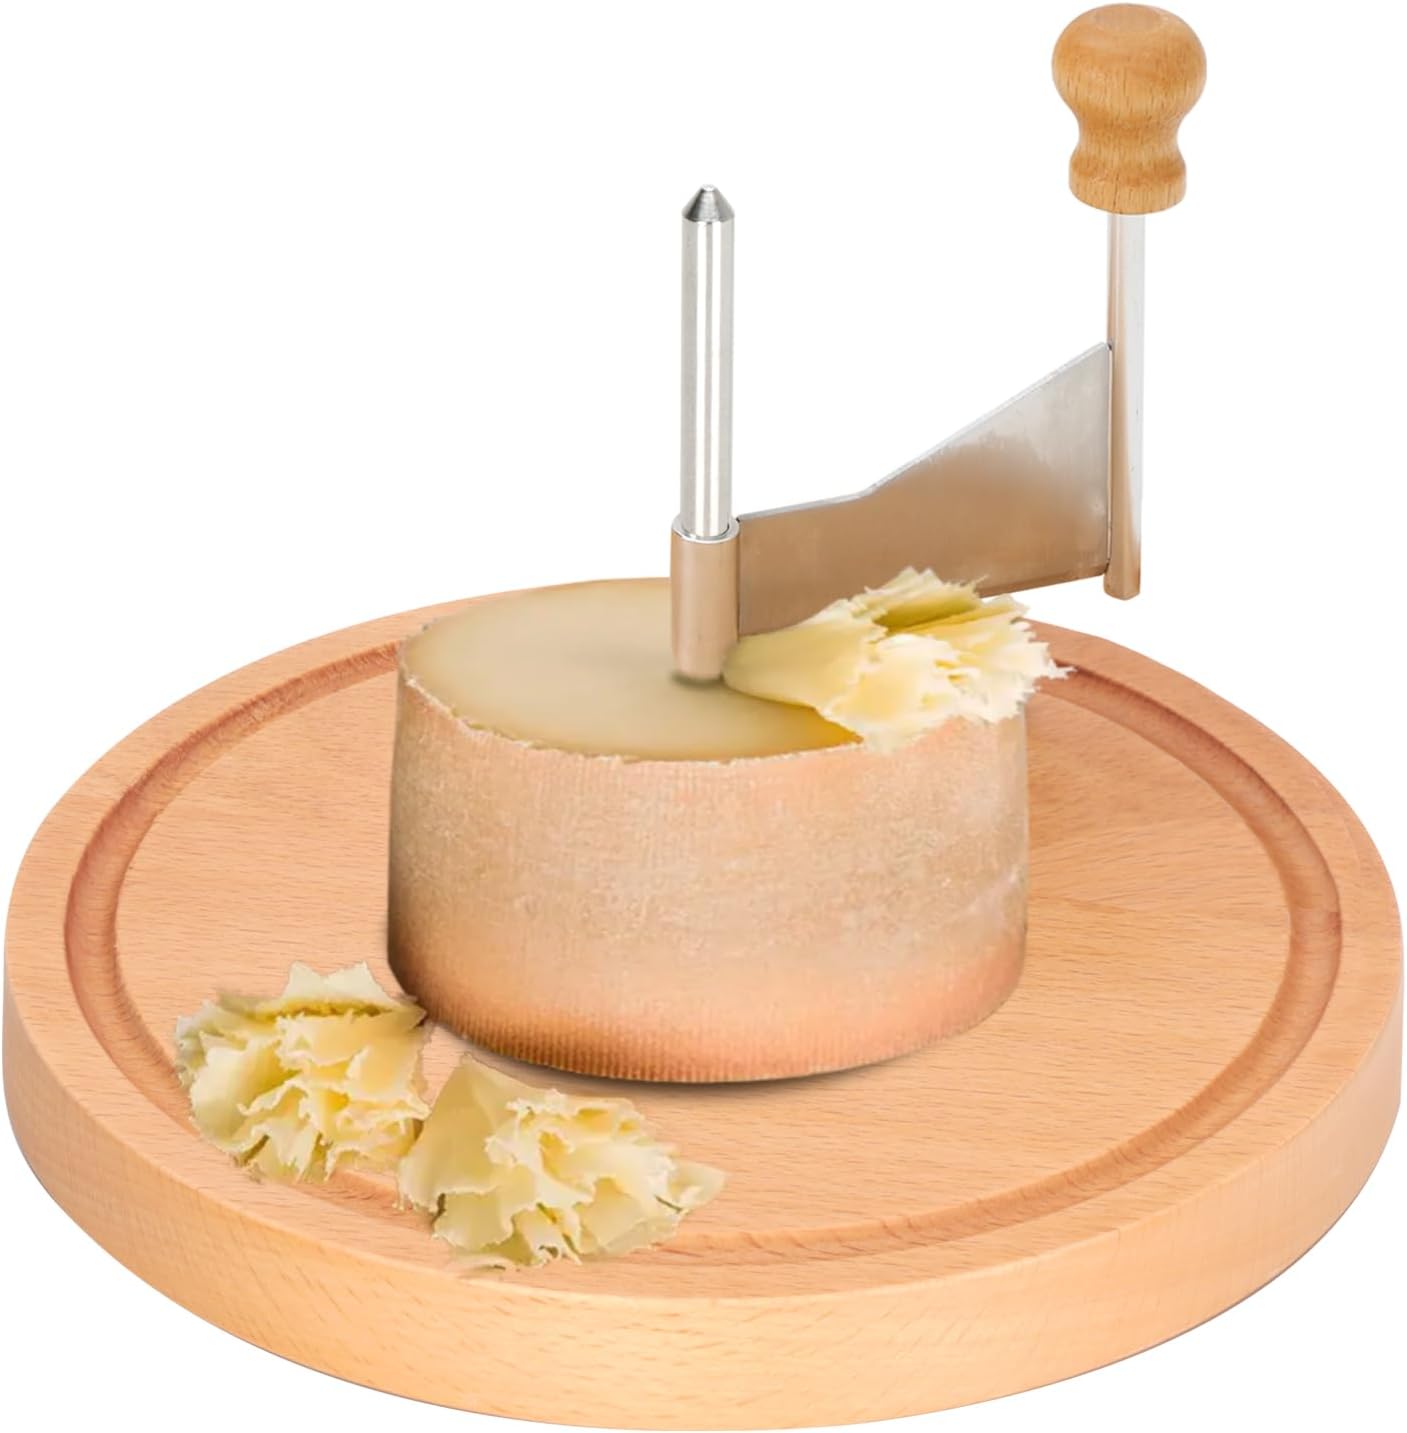 Manual Handheld cheese curler